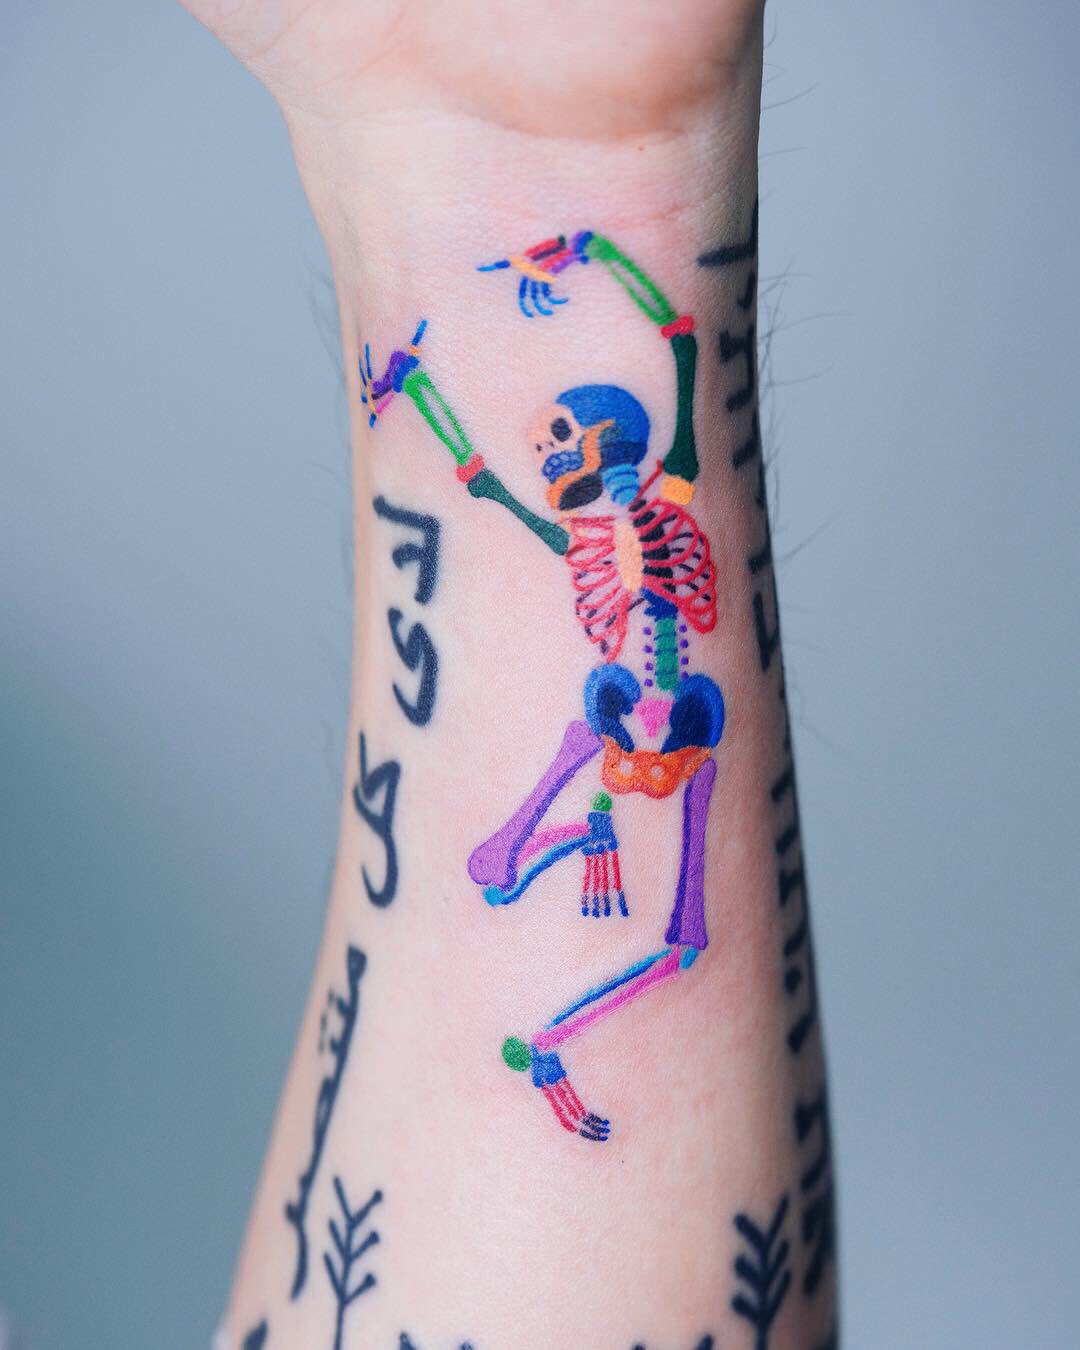 Dancing Skeleton  Skeleton tattoos Skeleton drawings Body art tattoos